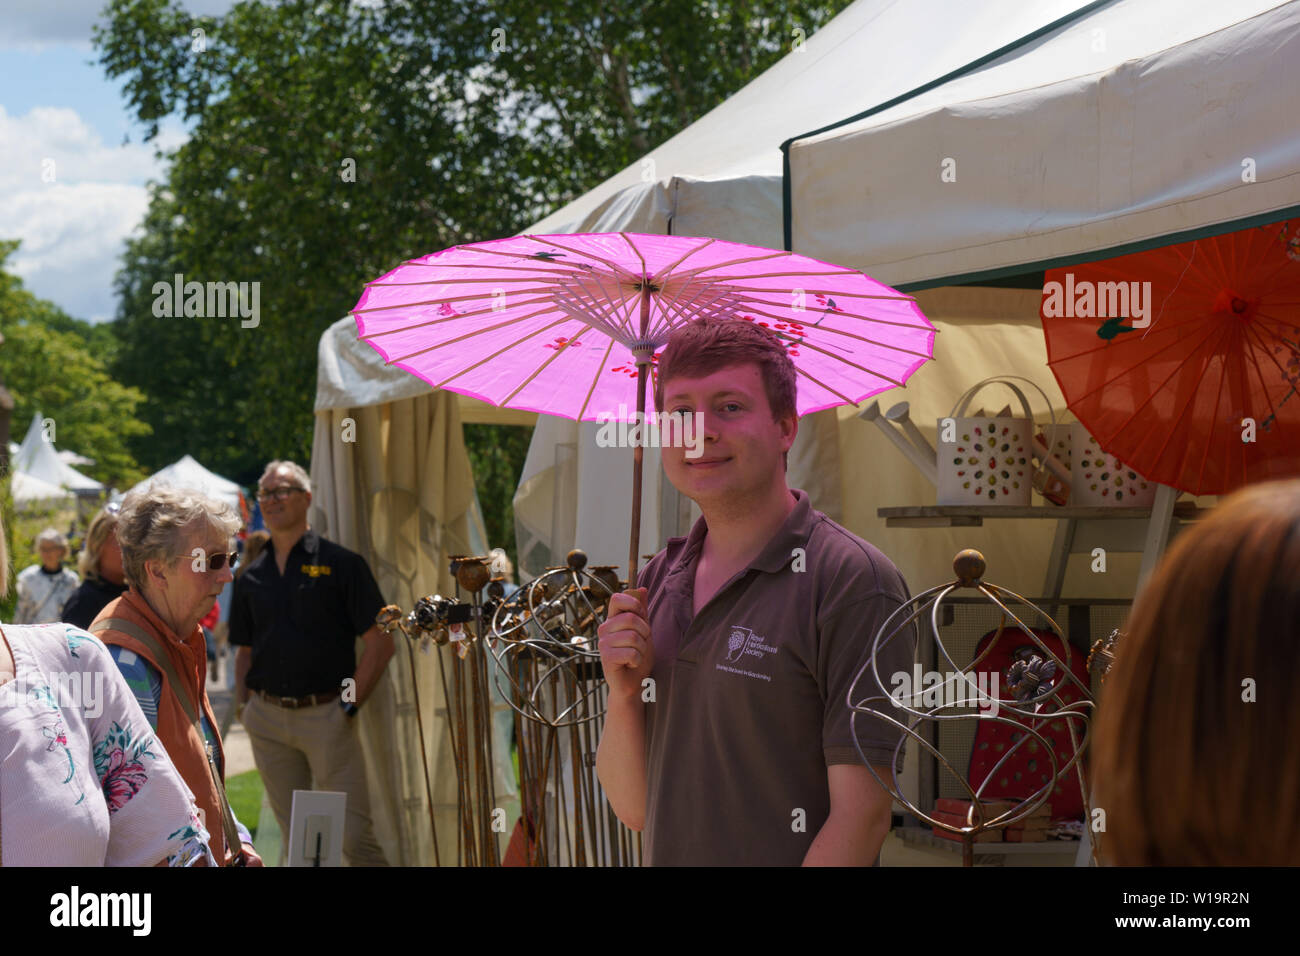 Guy se tenait près d'une tente commerciale et à l'ombre sous un parapluie rose lors d'un spectacle de fleurs, Harrogate, North Yorkshire, Angleterre, Royaume-Uni. Banque D'Images